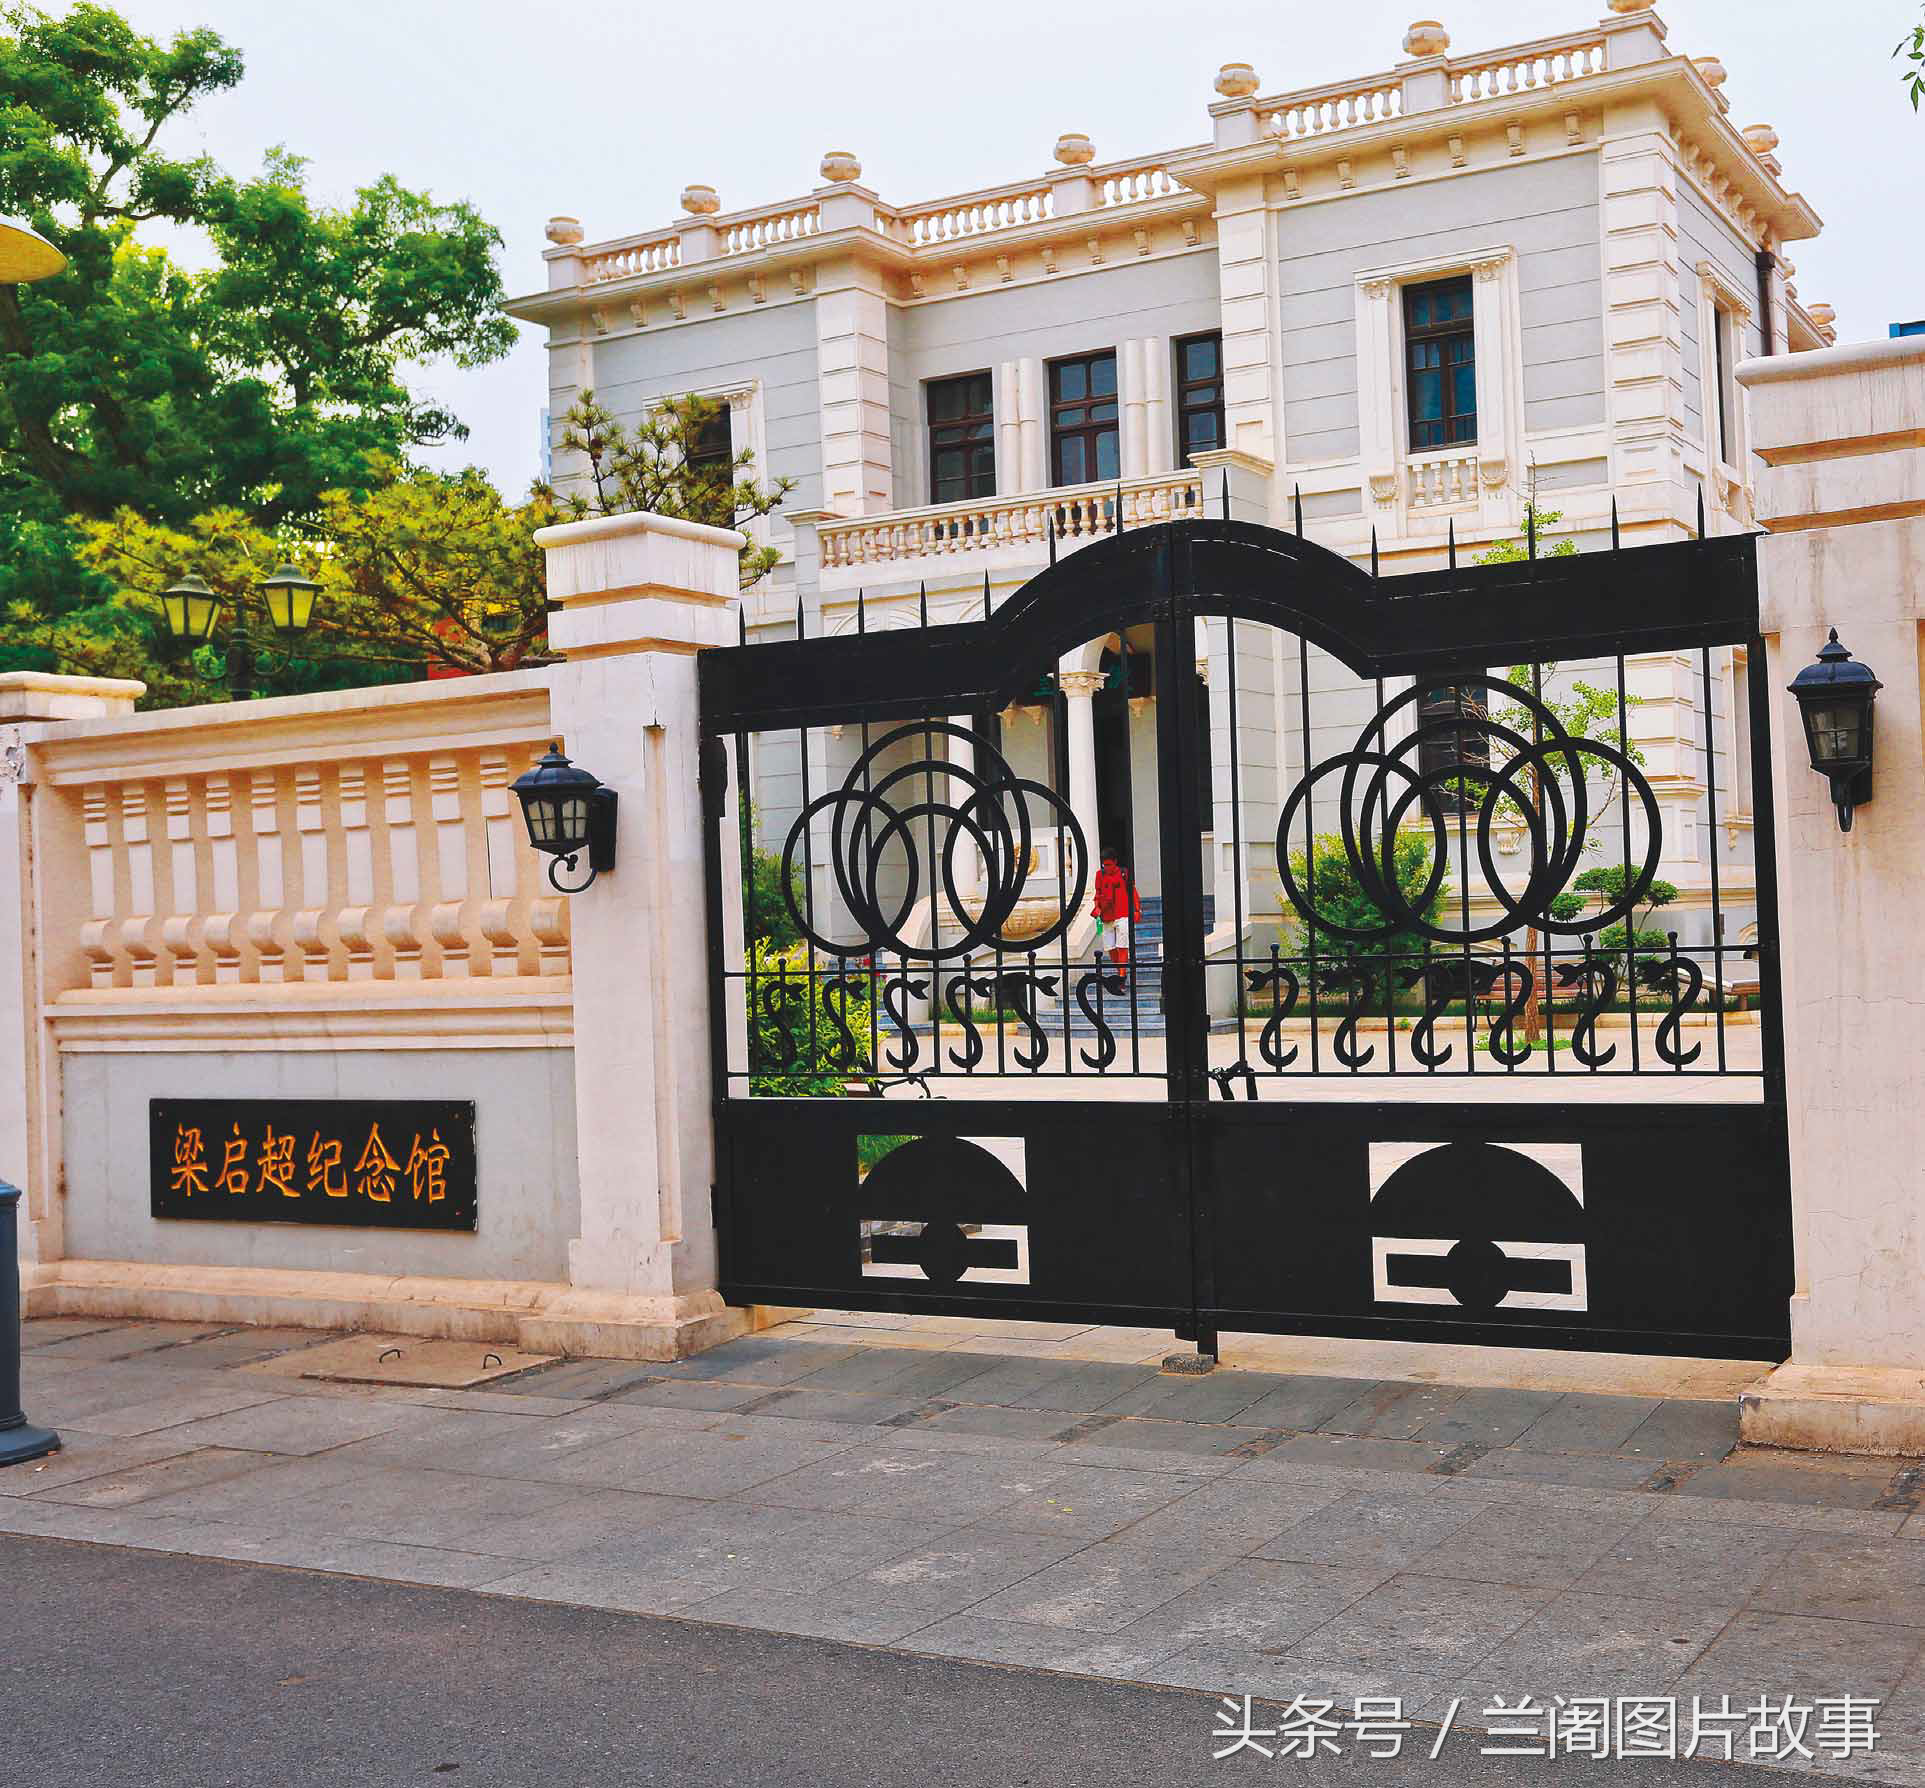 位于天津市河北区民族路的梁启超纪念馆,主要由梁启超先生的故居和饮